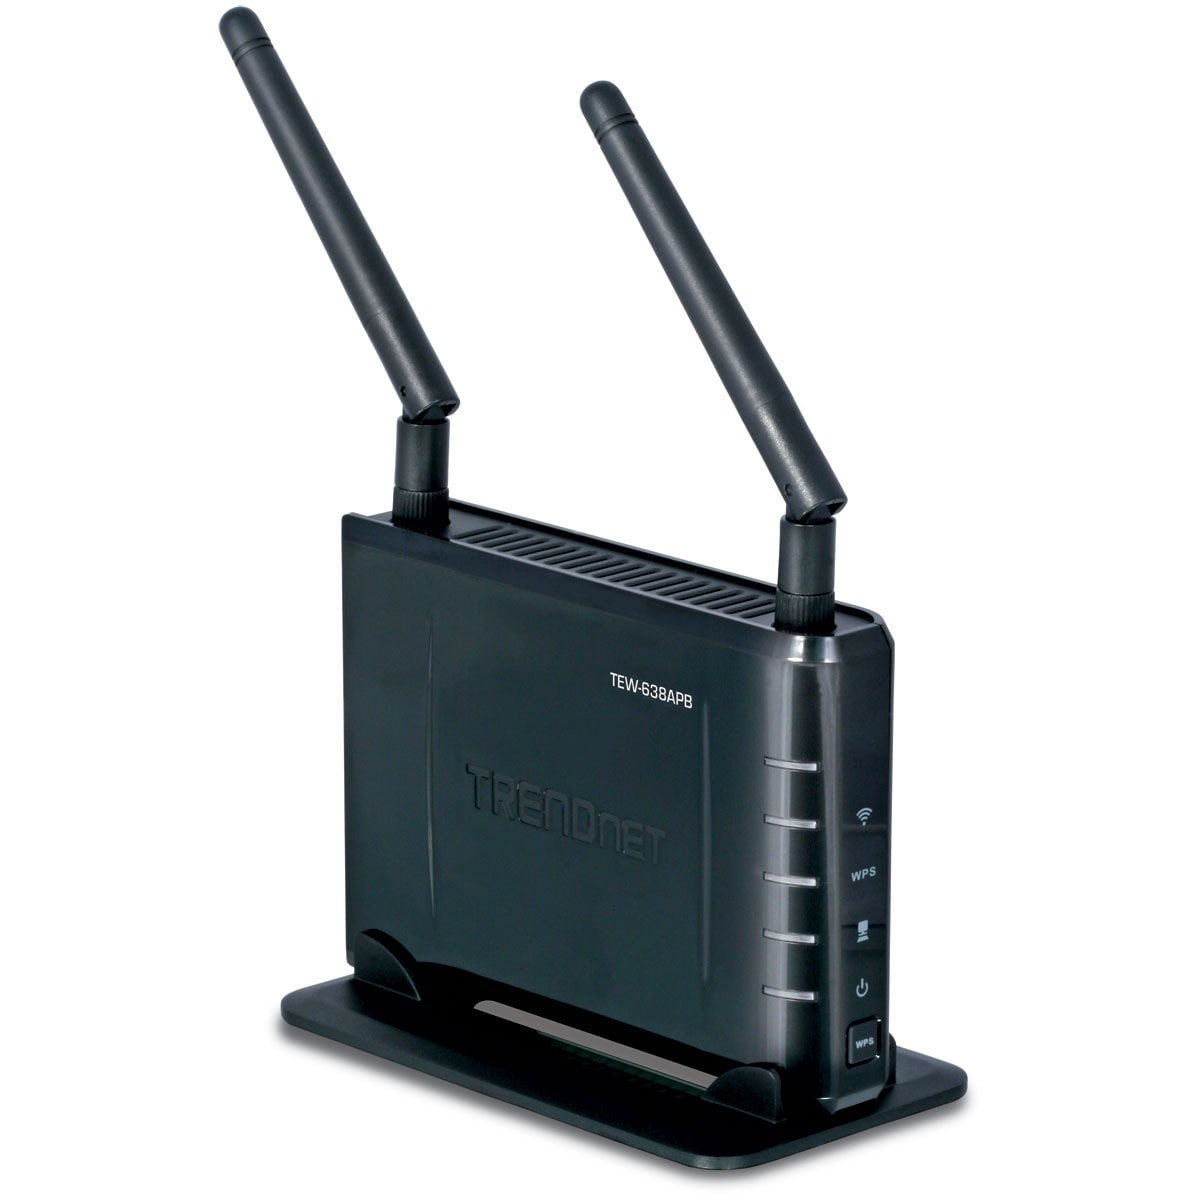 TrendNet TEW-638APB - Wifi 802.11n 300MB - grosbill-pro.com - 3